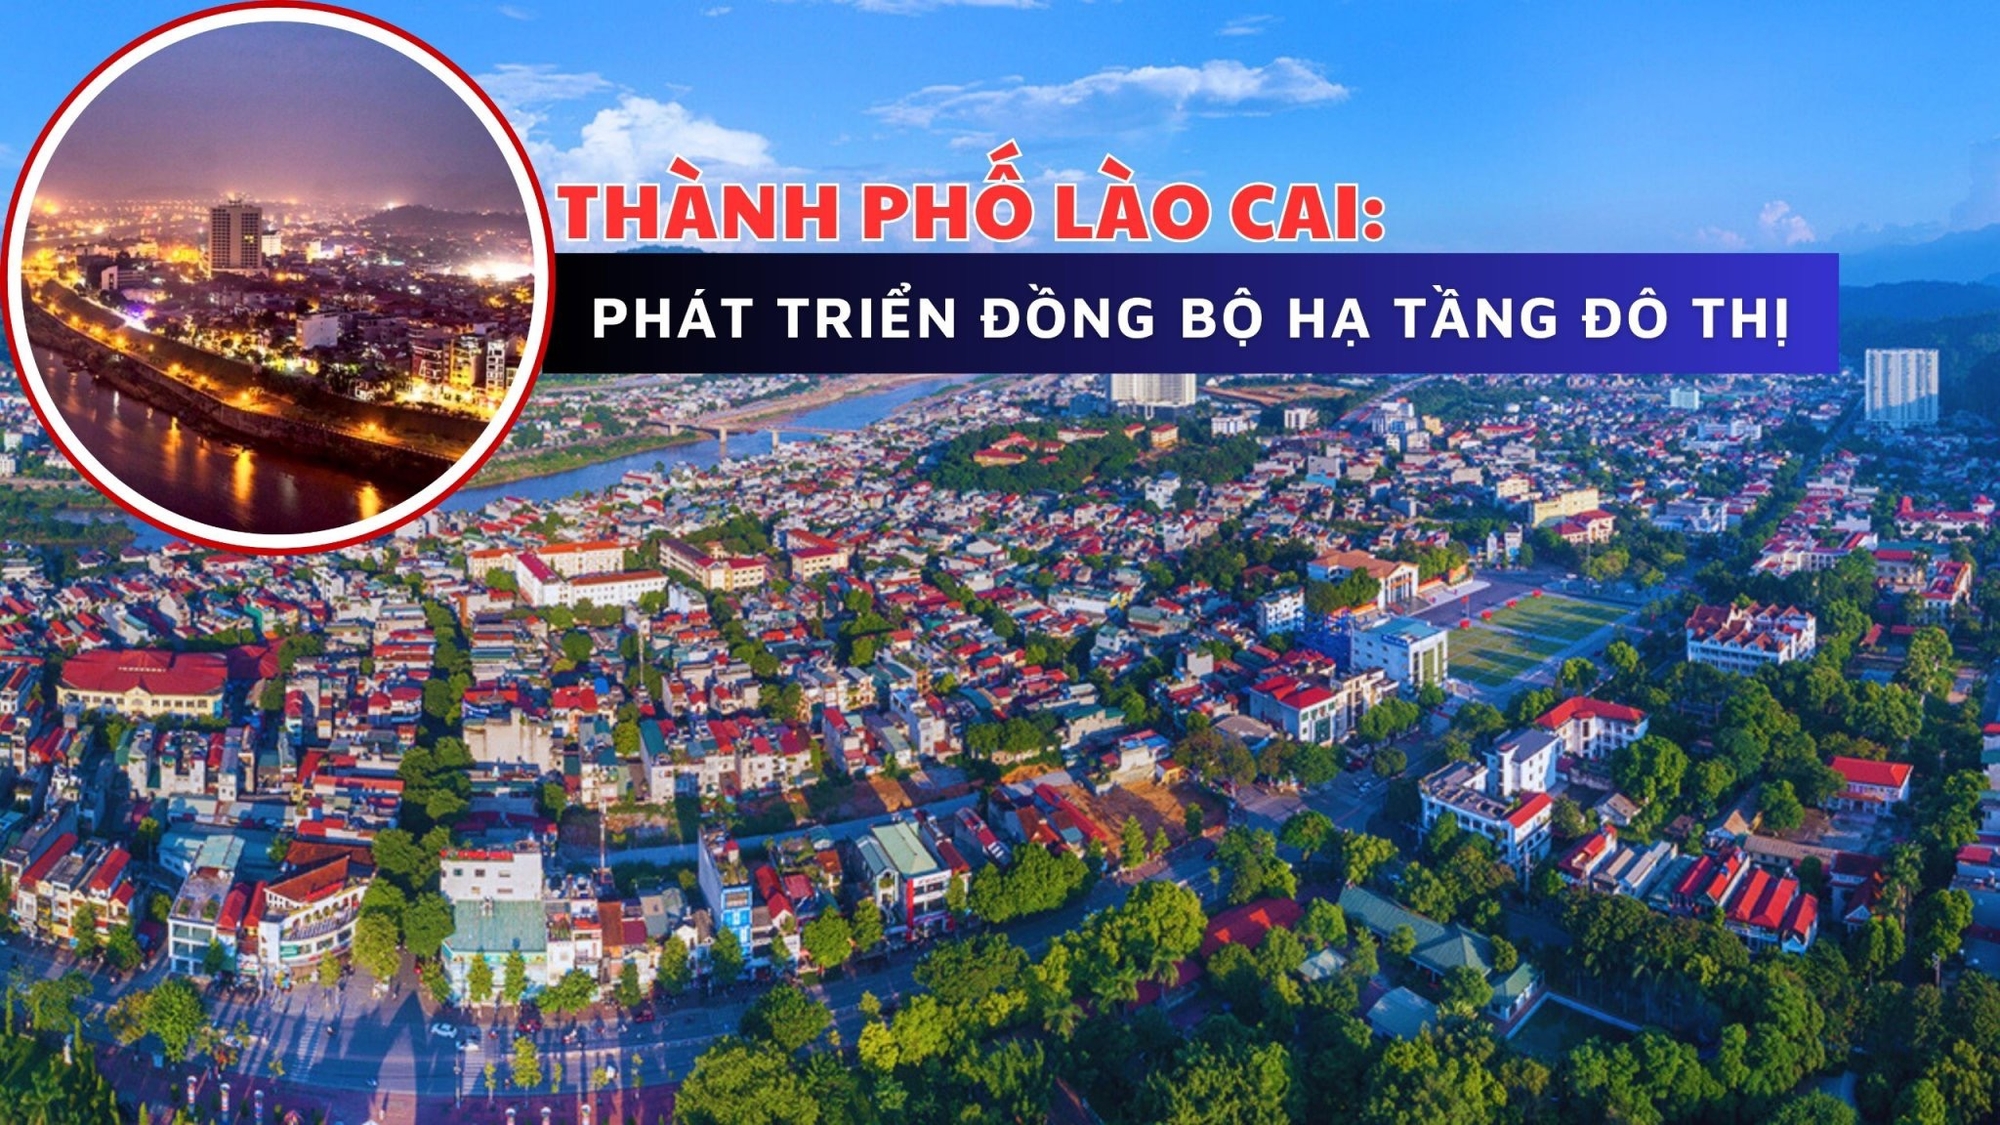 Thành phố Lào Cai: Phát triển đồng bộ hạ tầng đô thị 